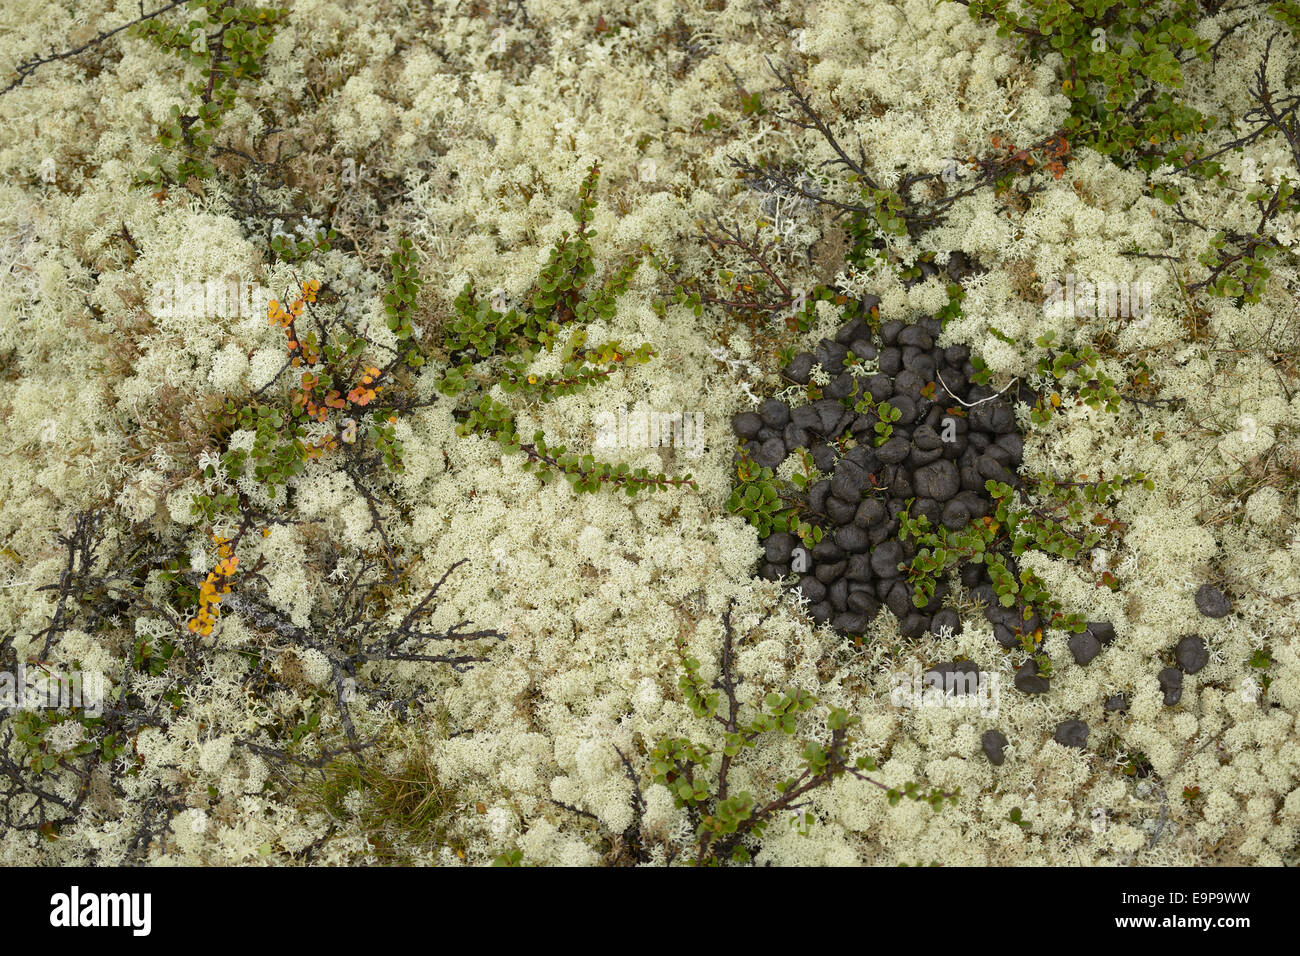 Muskox (Ovibos moschatus) droppings, pile amongst Reindeer Lichen (Cladonia rangiferina) and Dwarf Birch (Betula nana), Dovrefjell-Sunndalsfjella N.P., Oppdal, Norway, August Stock Photo